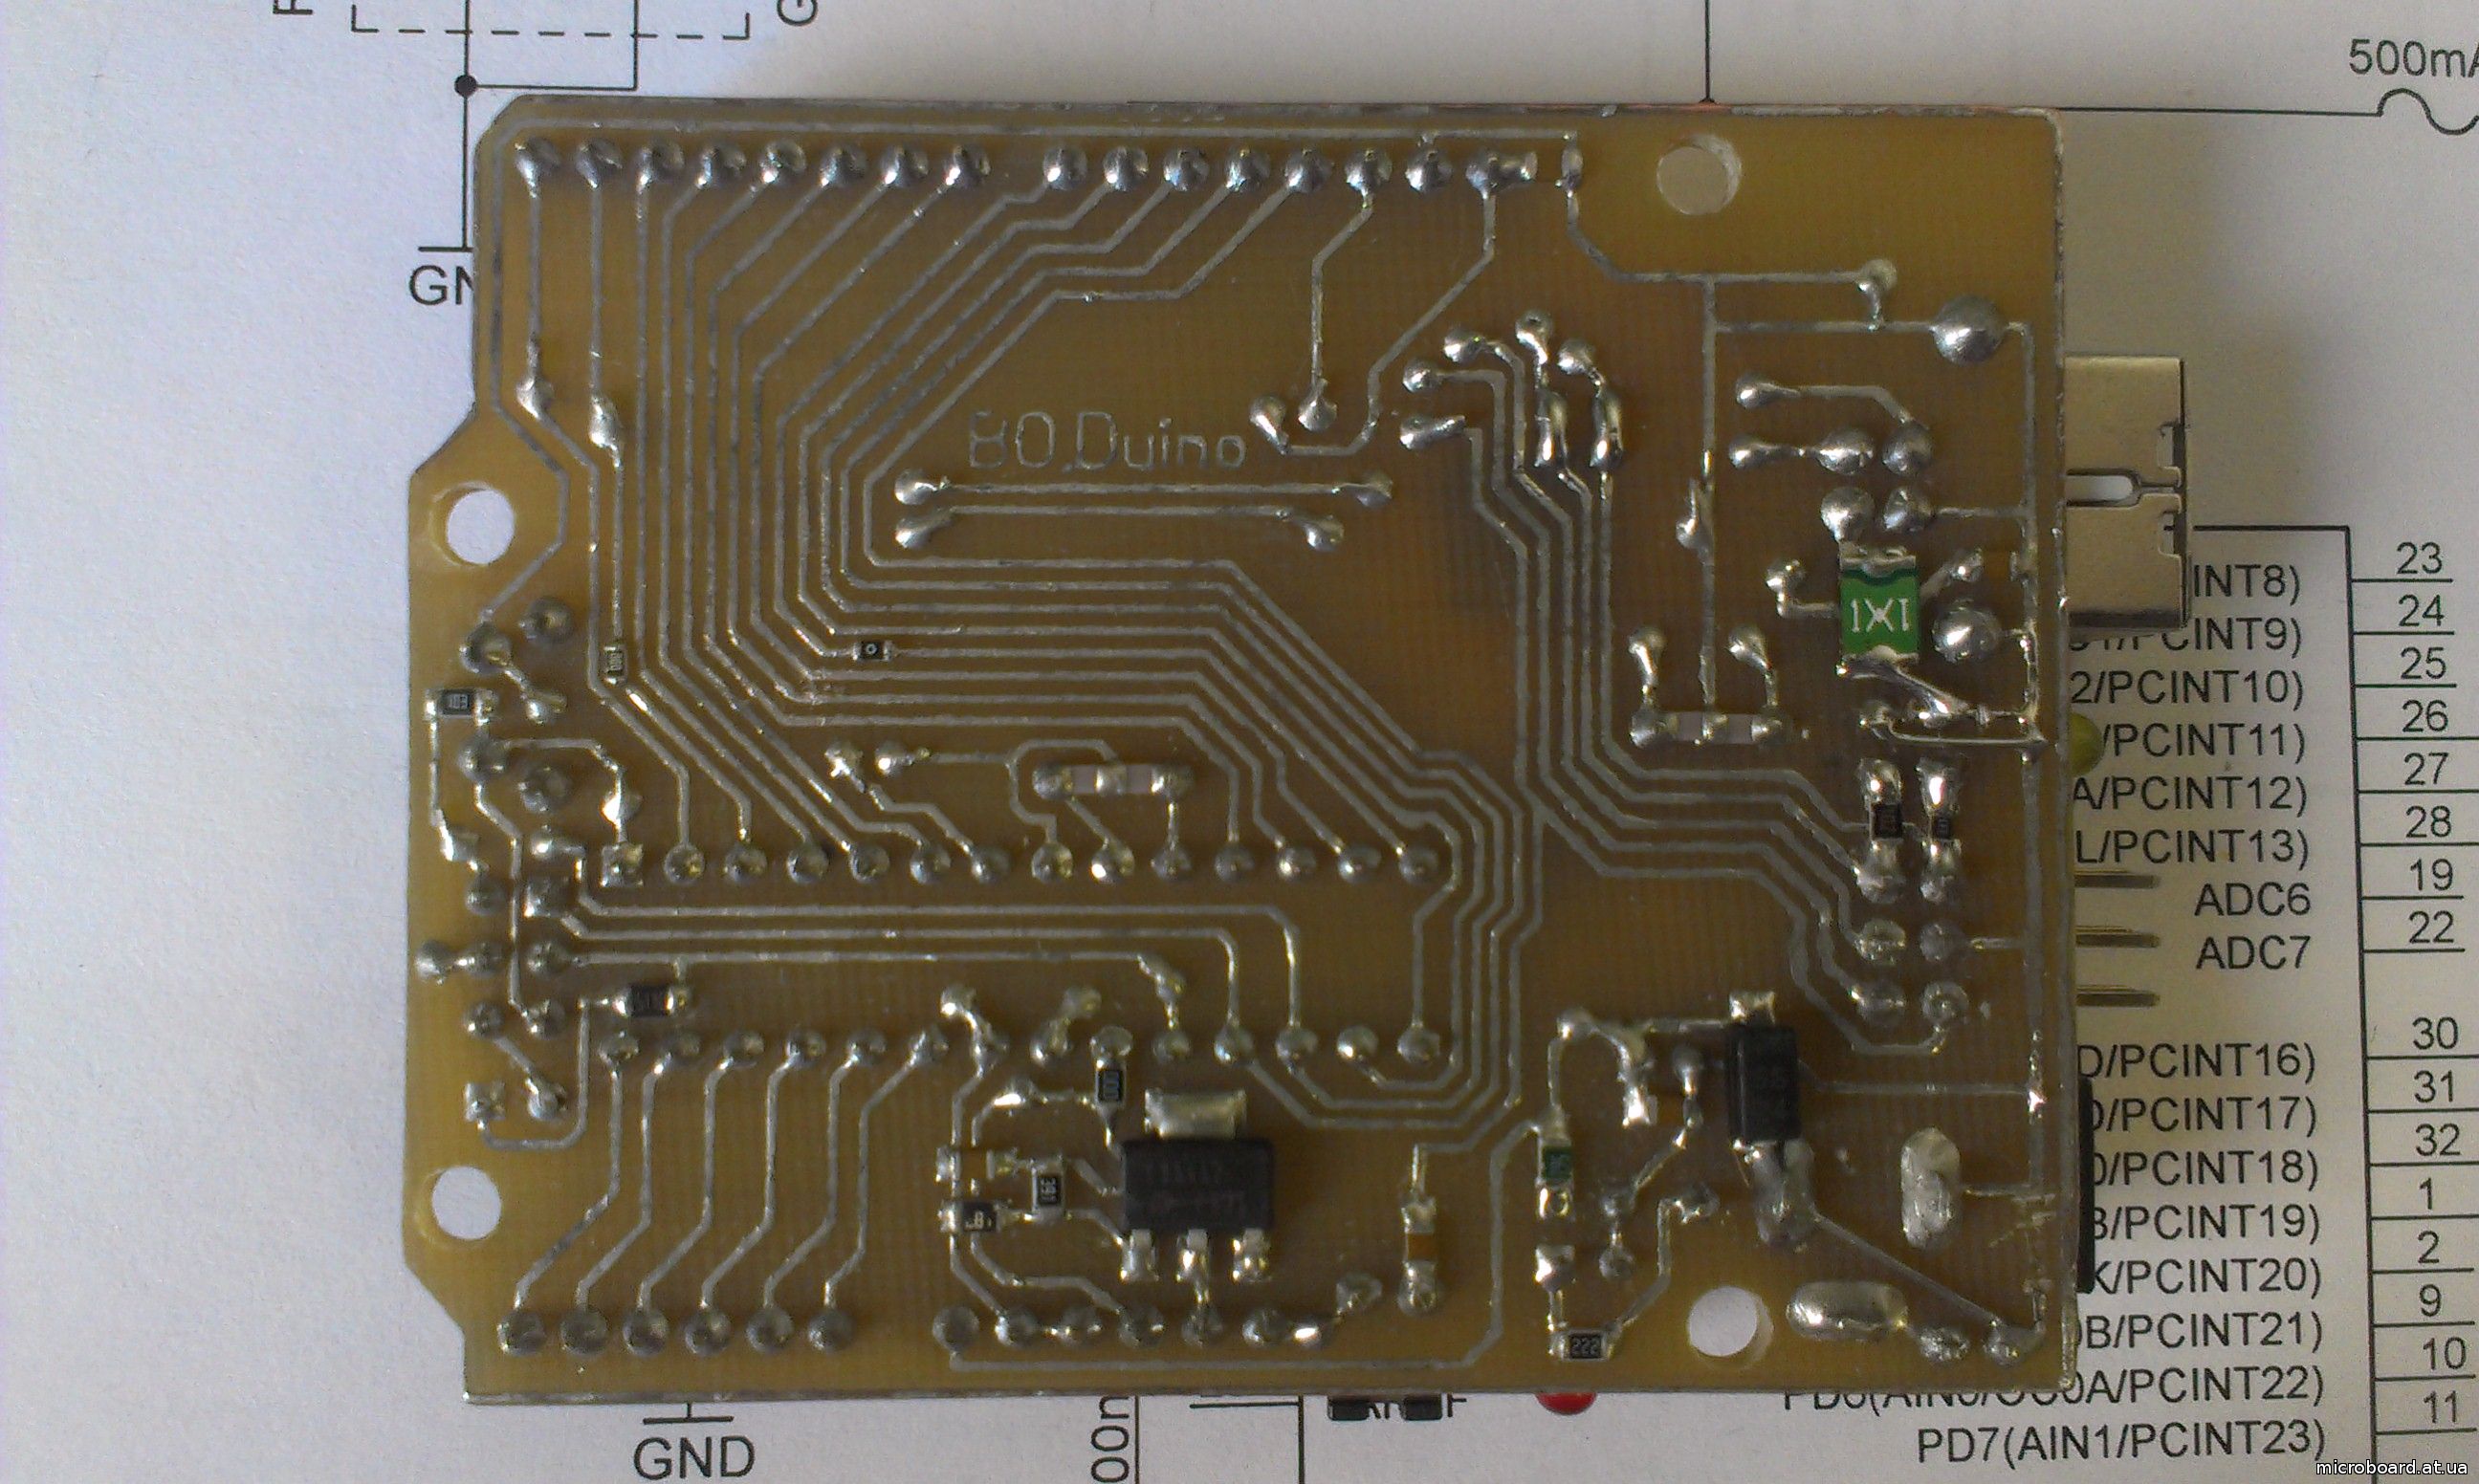 Arduino Uno R3 (ATmega328, CH340G)